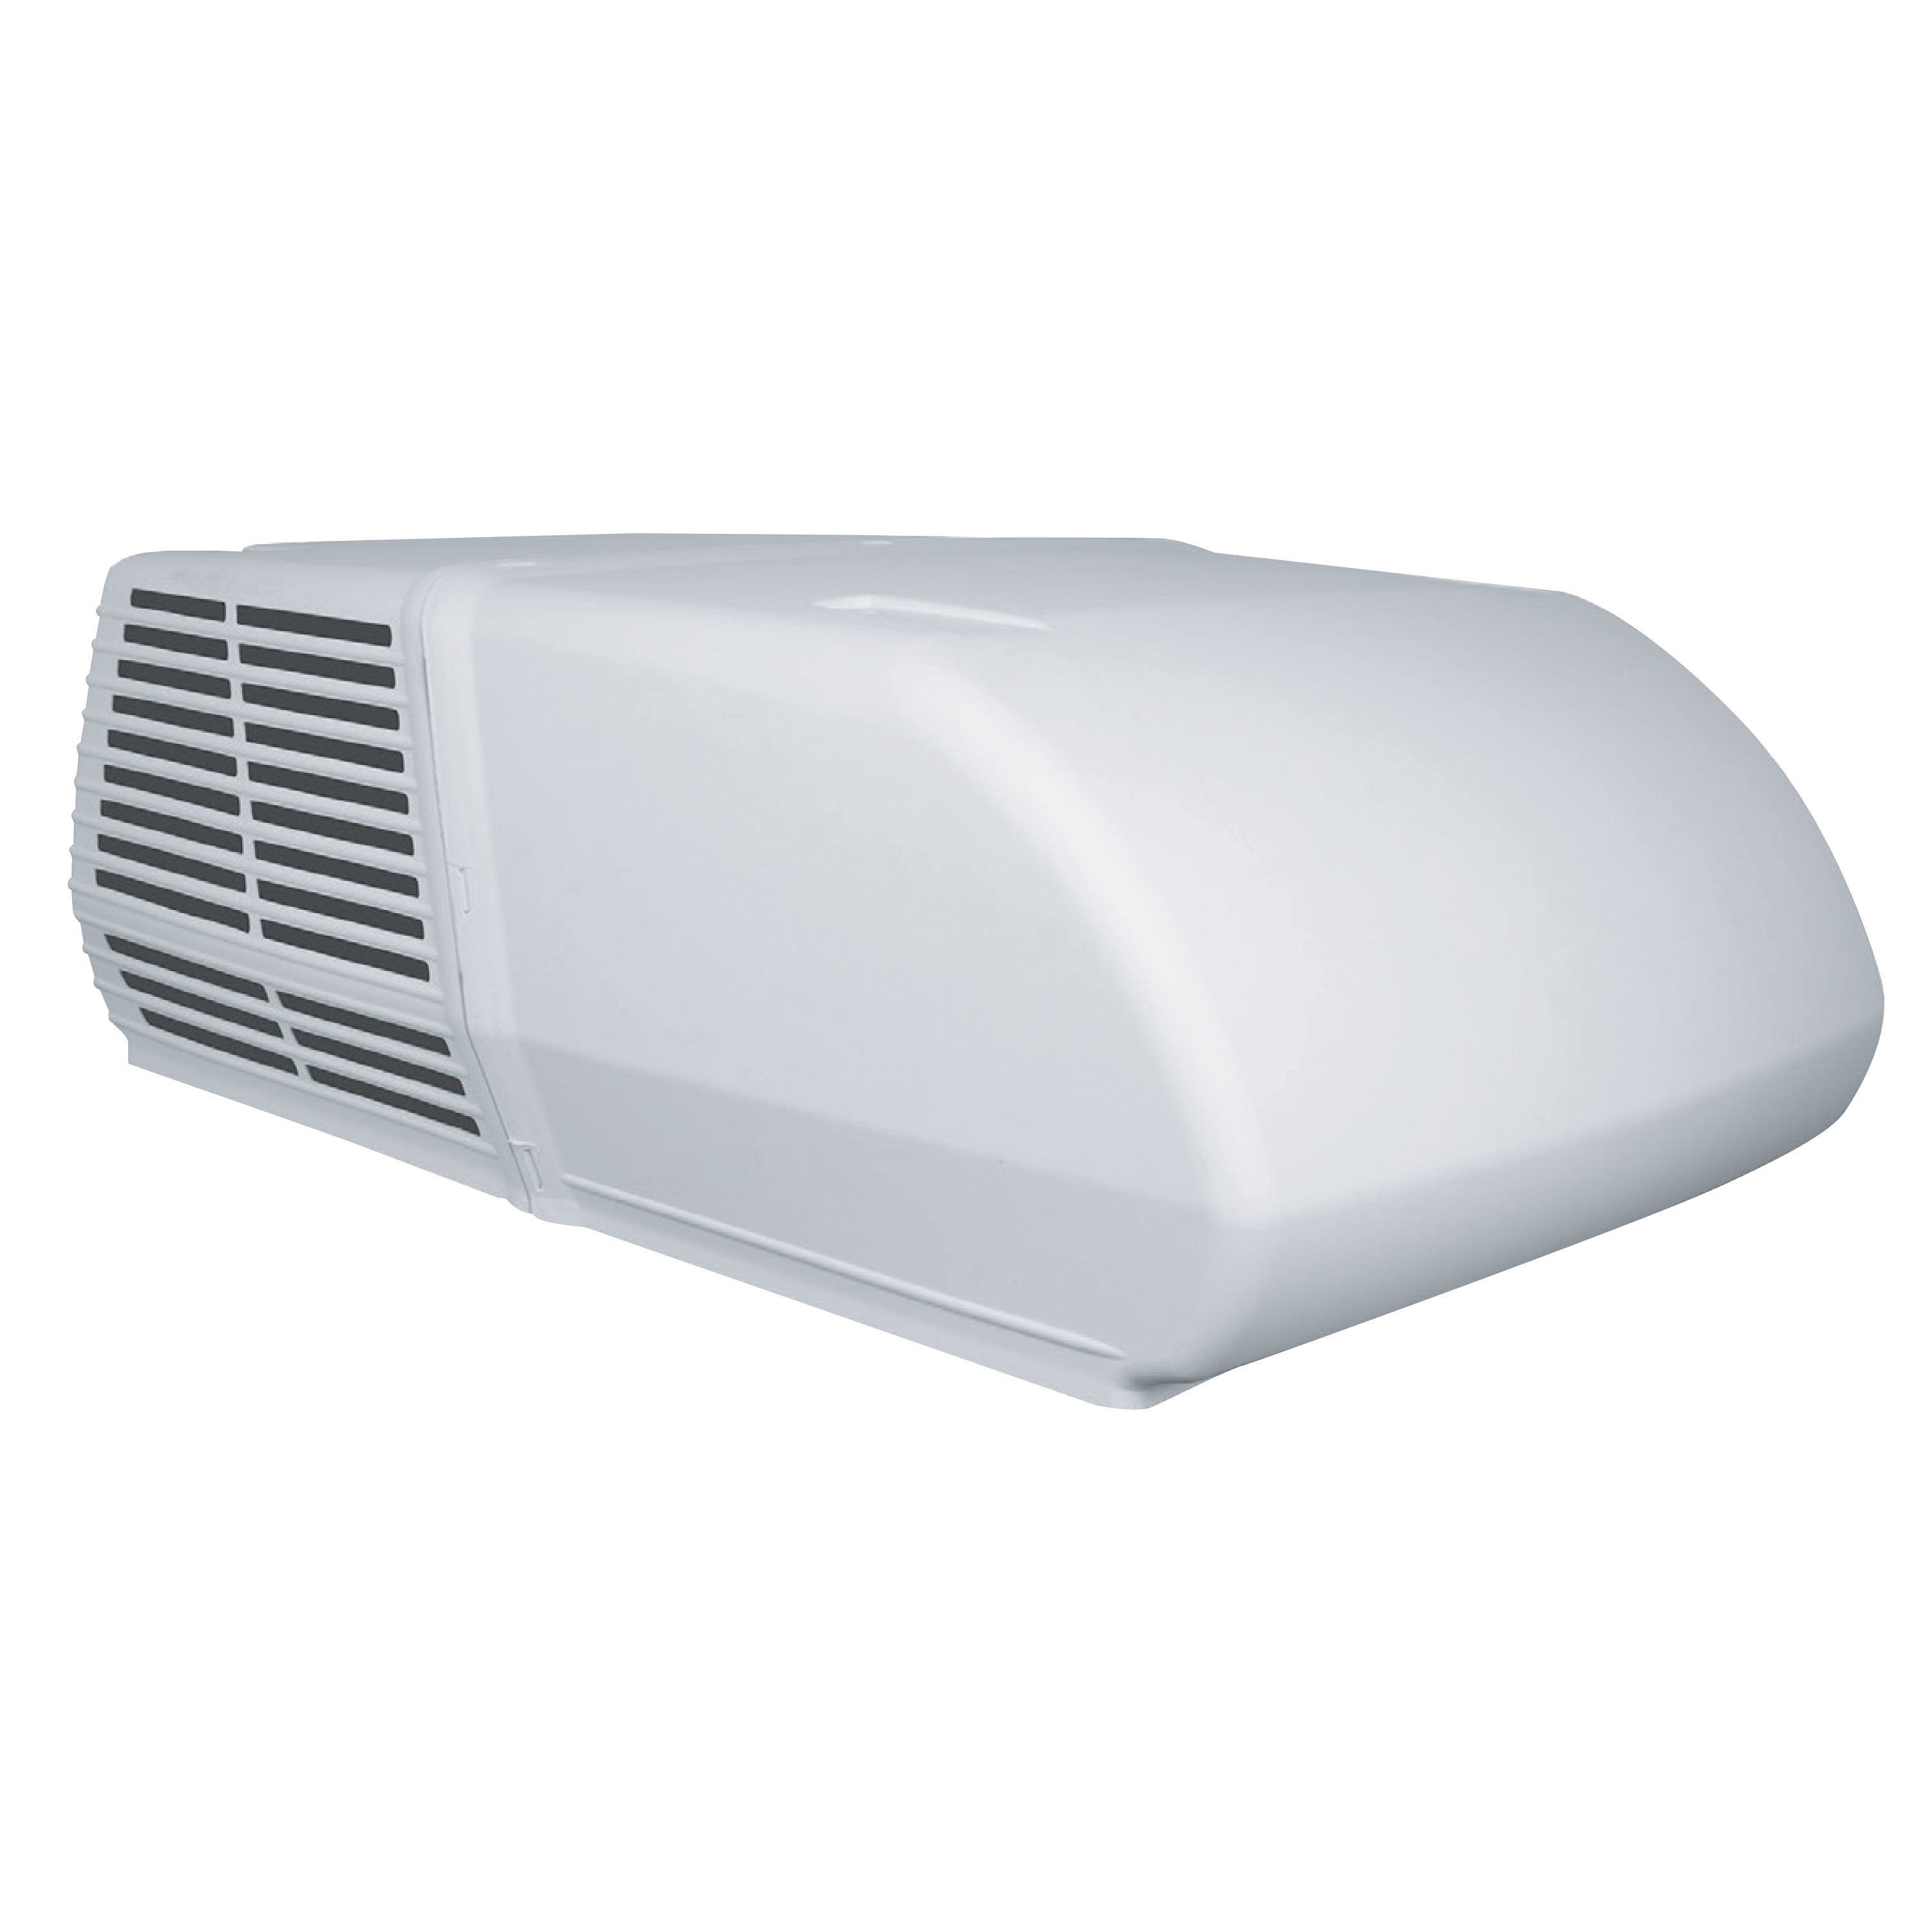 RVP 48208C966 Coleman Mach 3 Power Saver 13.5K White Air Conditioner